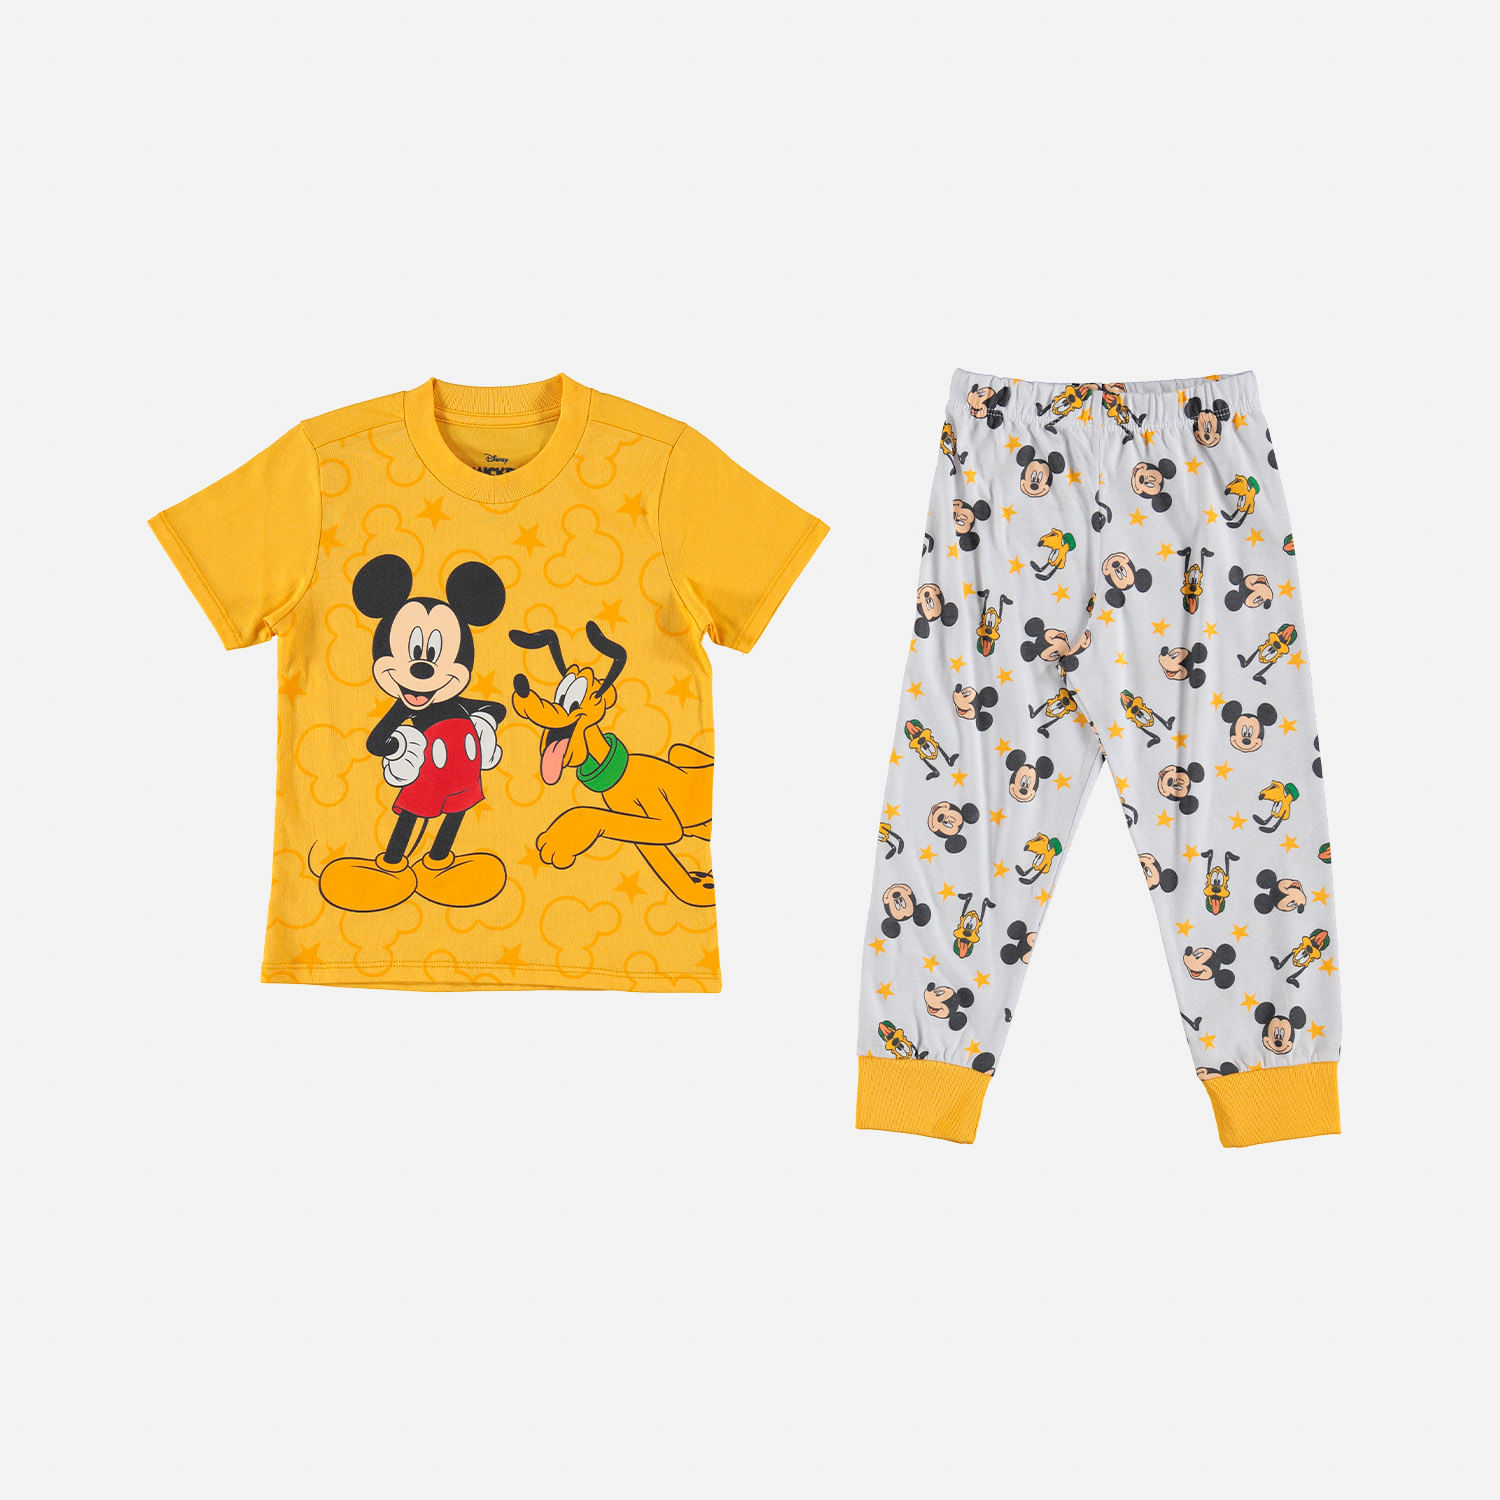 Pijama niño, manga corta/pantalón largo de Mickey Mouse